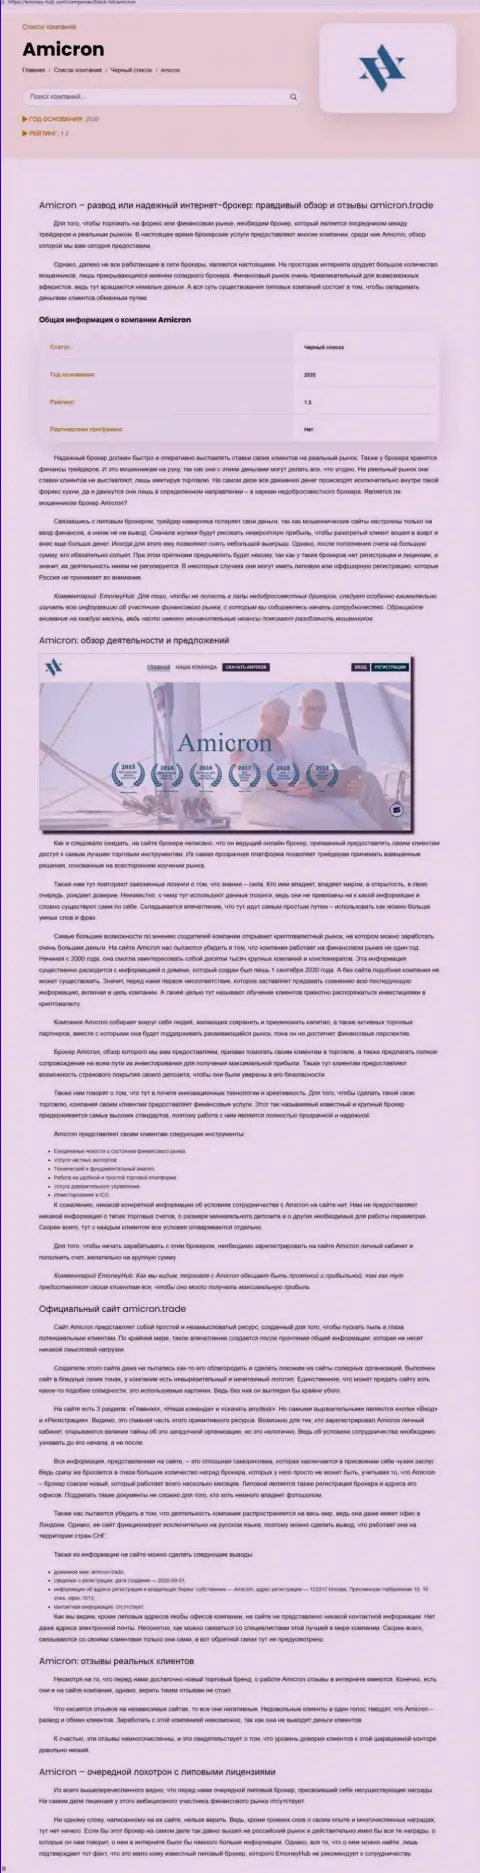 Амикрон - это циничный грабеж своих клиентов (обзор противоправных деяний)